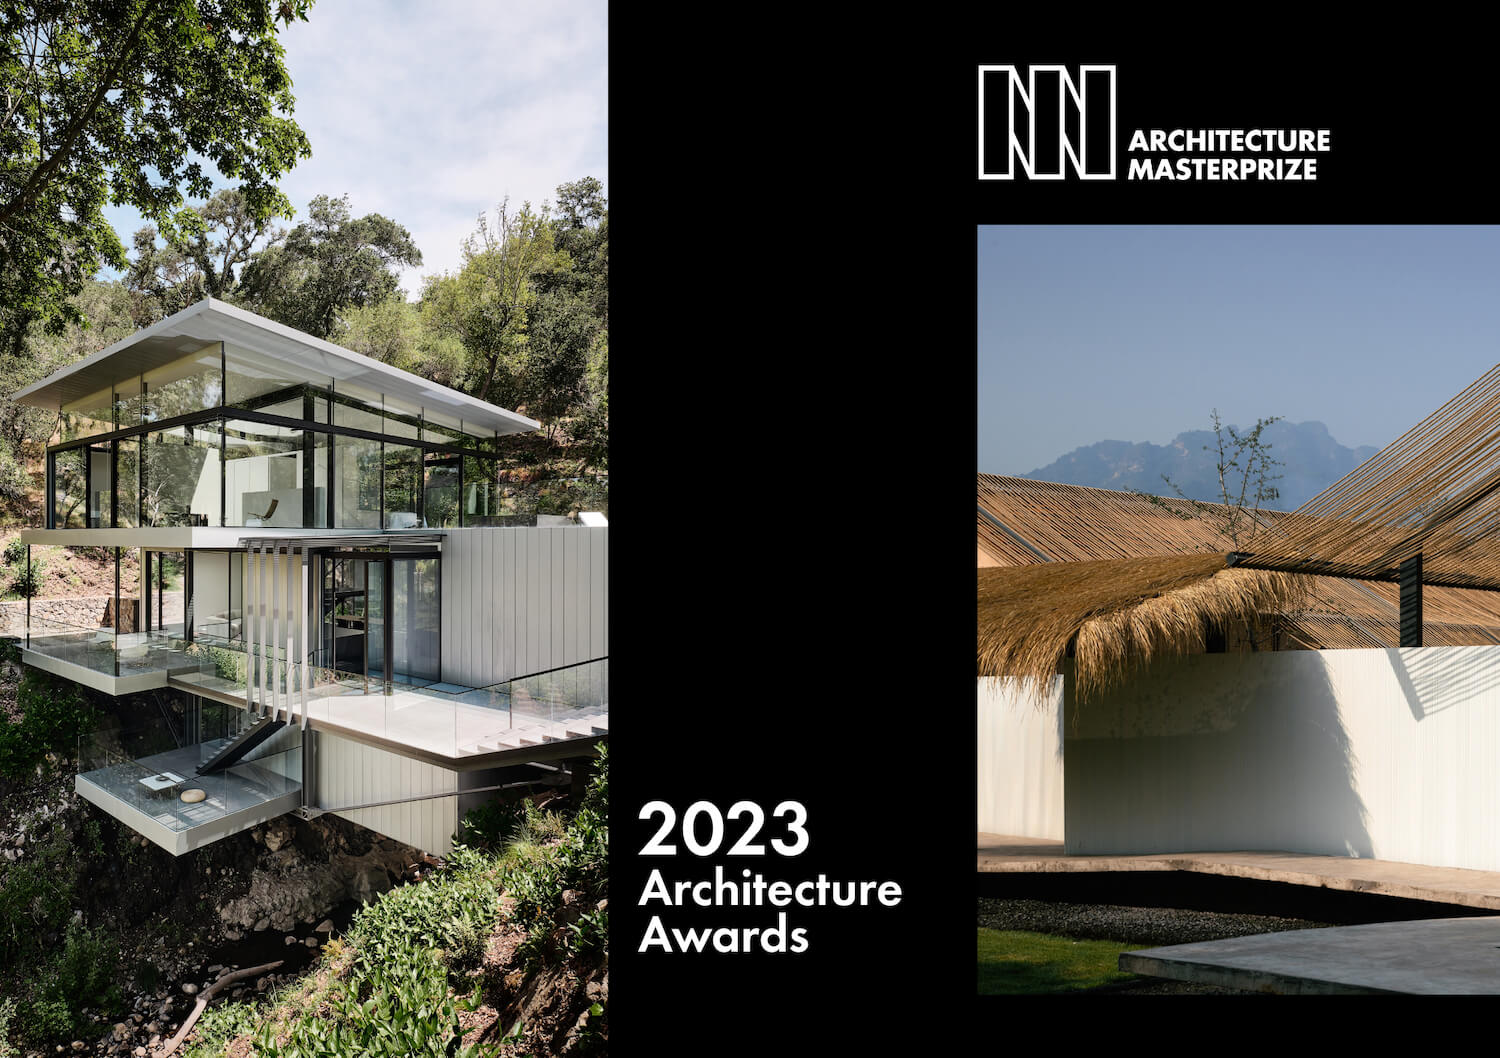 Architecture Master Prize 2023 